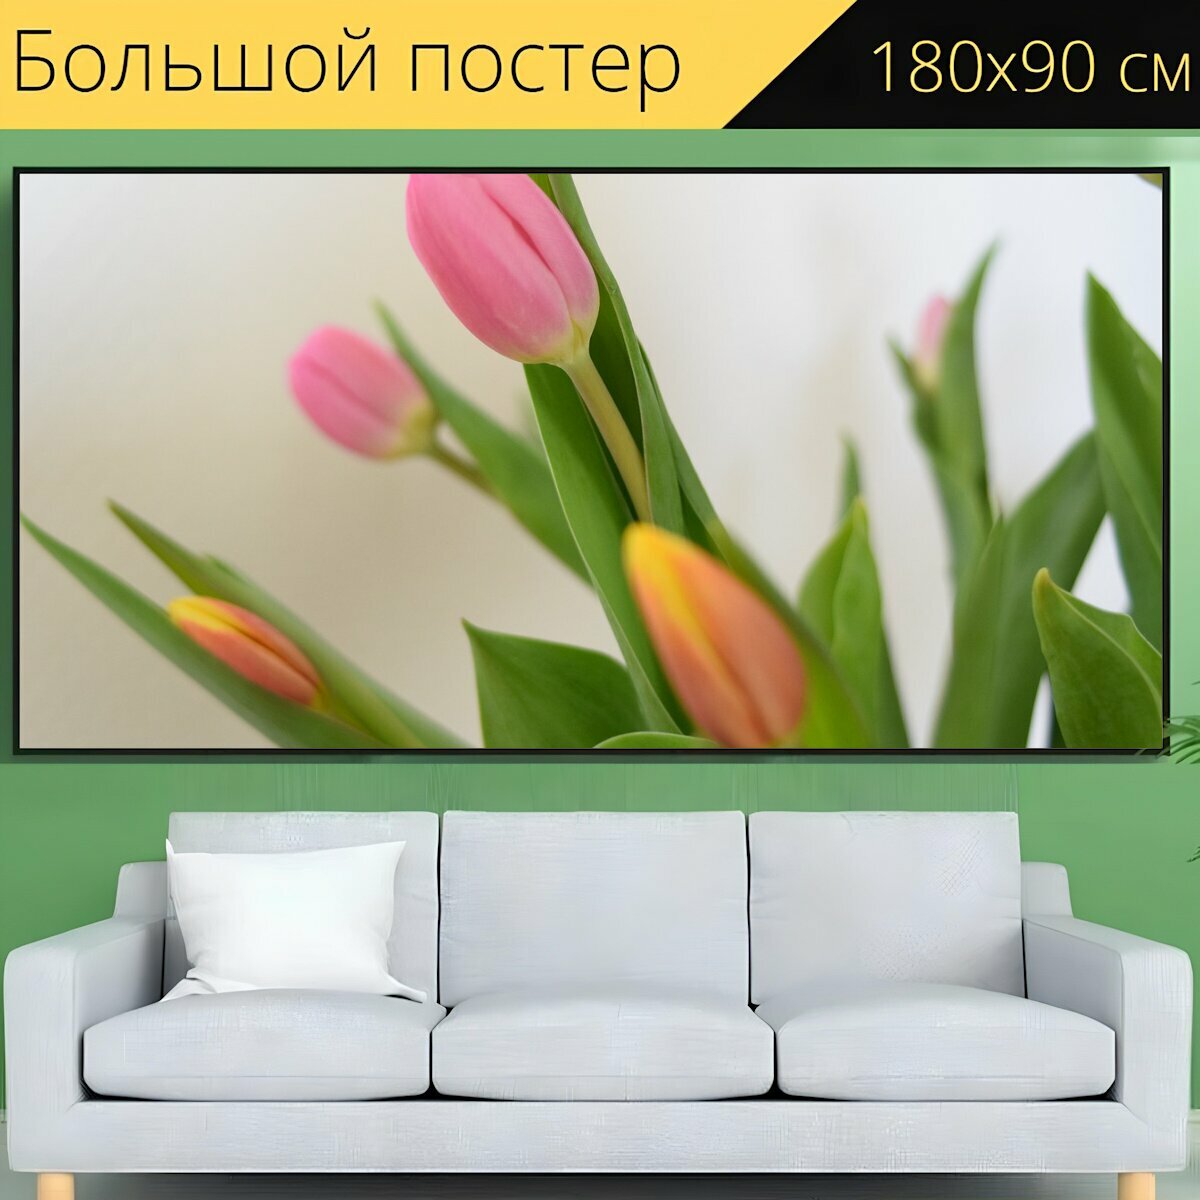 Большой постер "Тюльпаны, цветок, срезанные цветы" 180 x 90 см. для интерьера